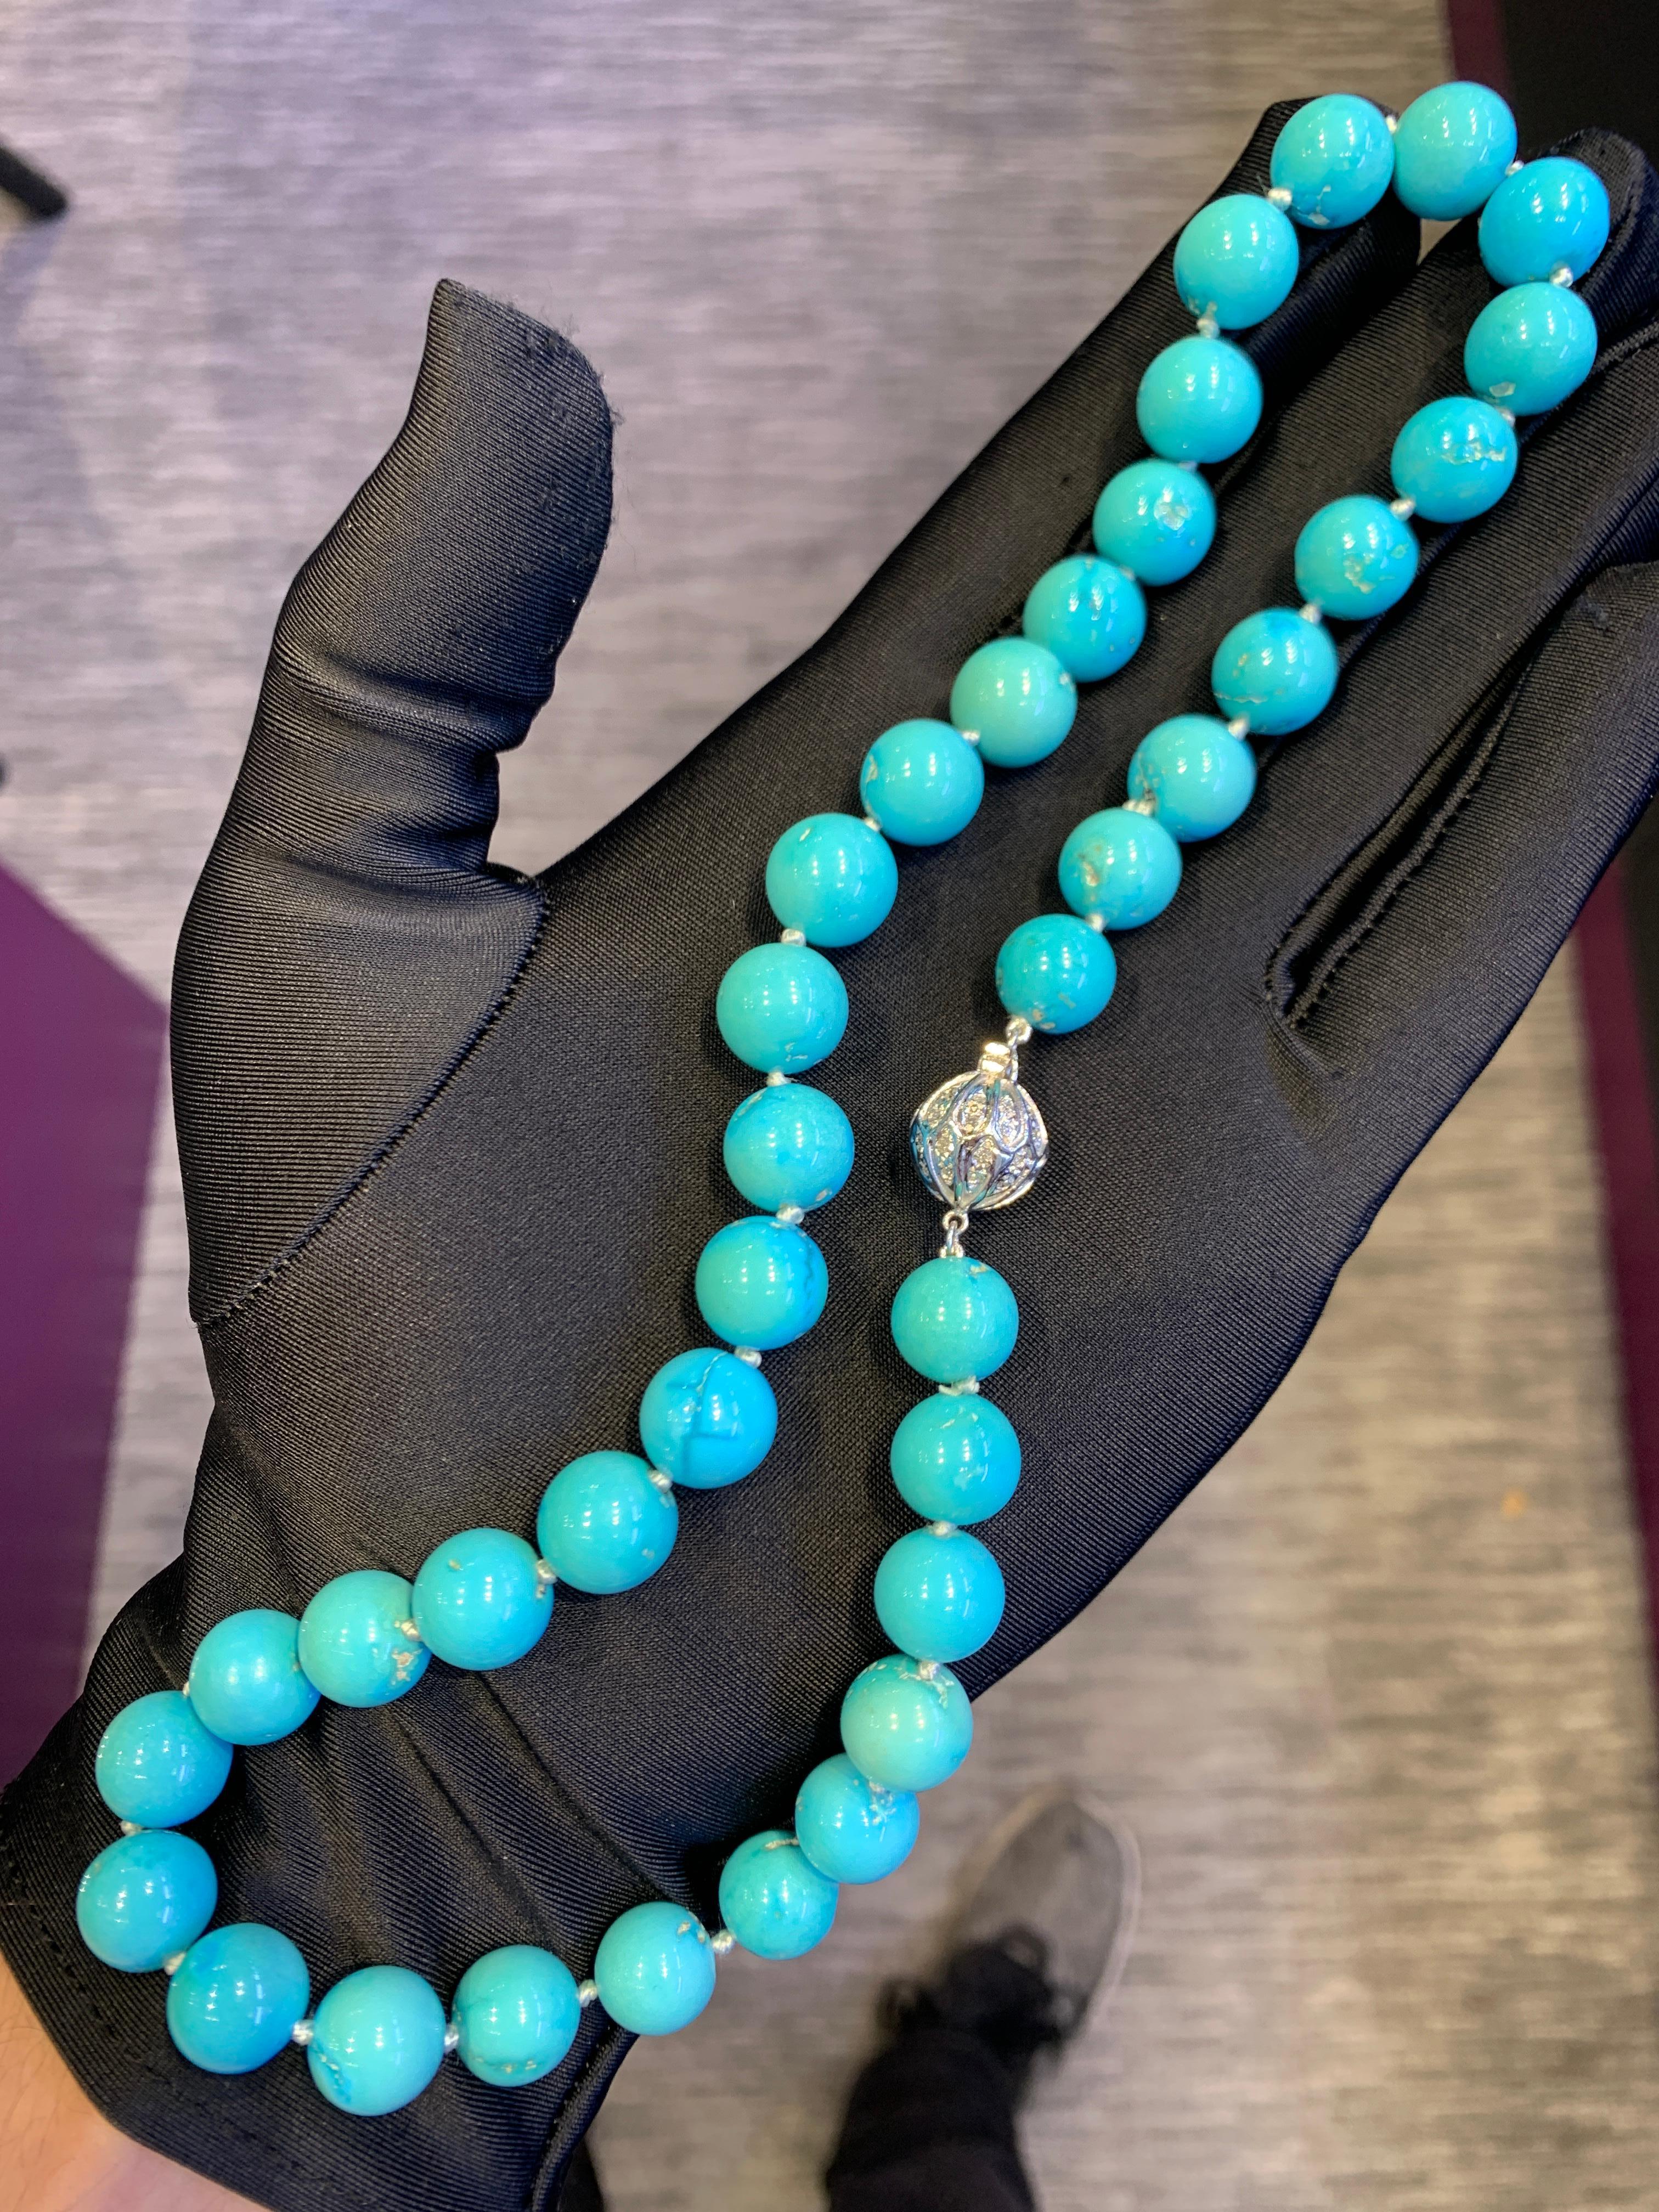 Collier de perles turquoises

Collier de turquoises perlées avec un fermoir en or blanc 18 carats serti de diamants de taille ronde.

Longueur : 19